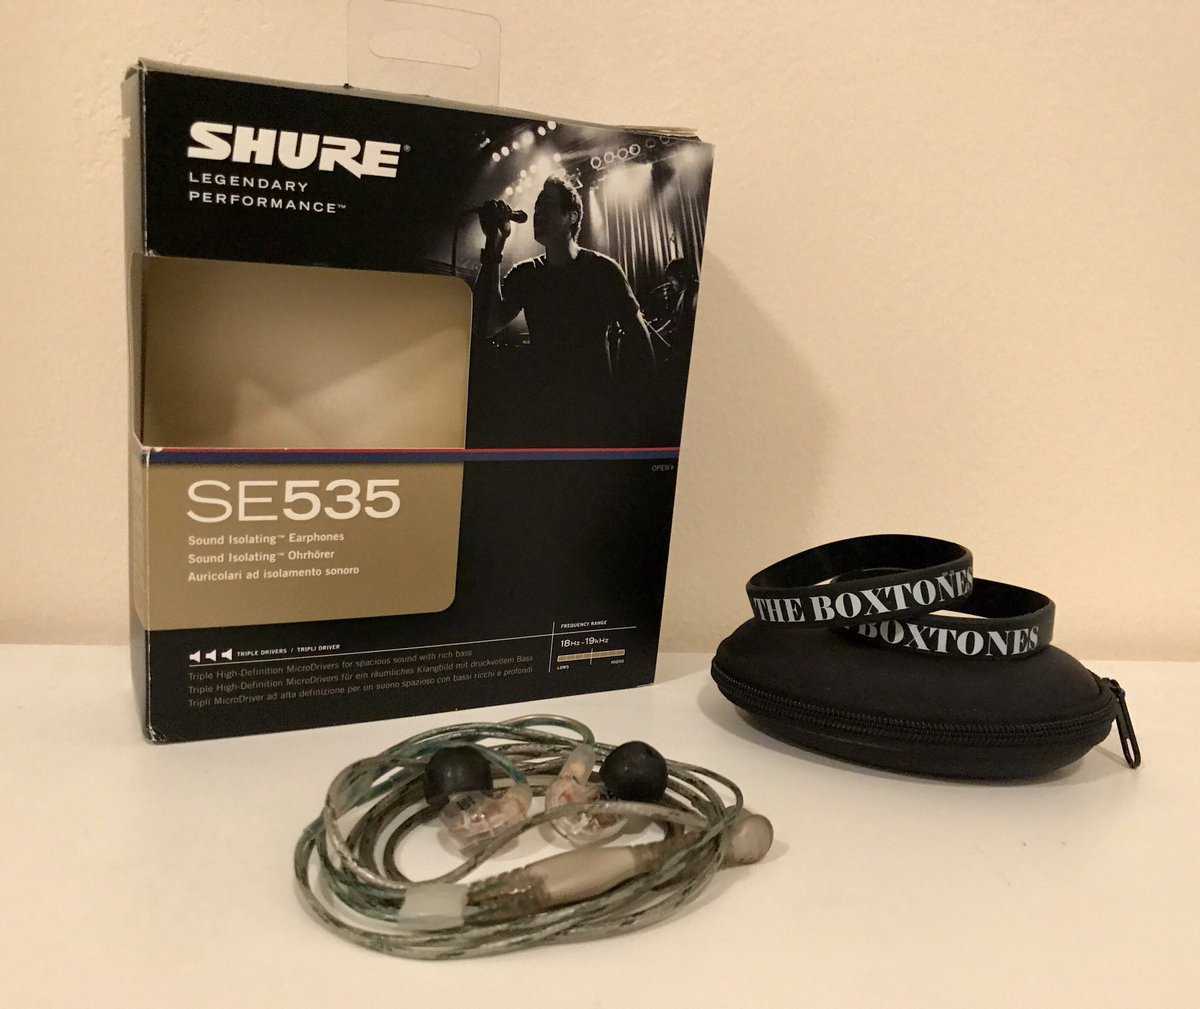 Se535 - sound isolating™ earphones